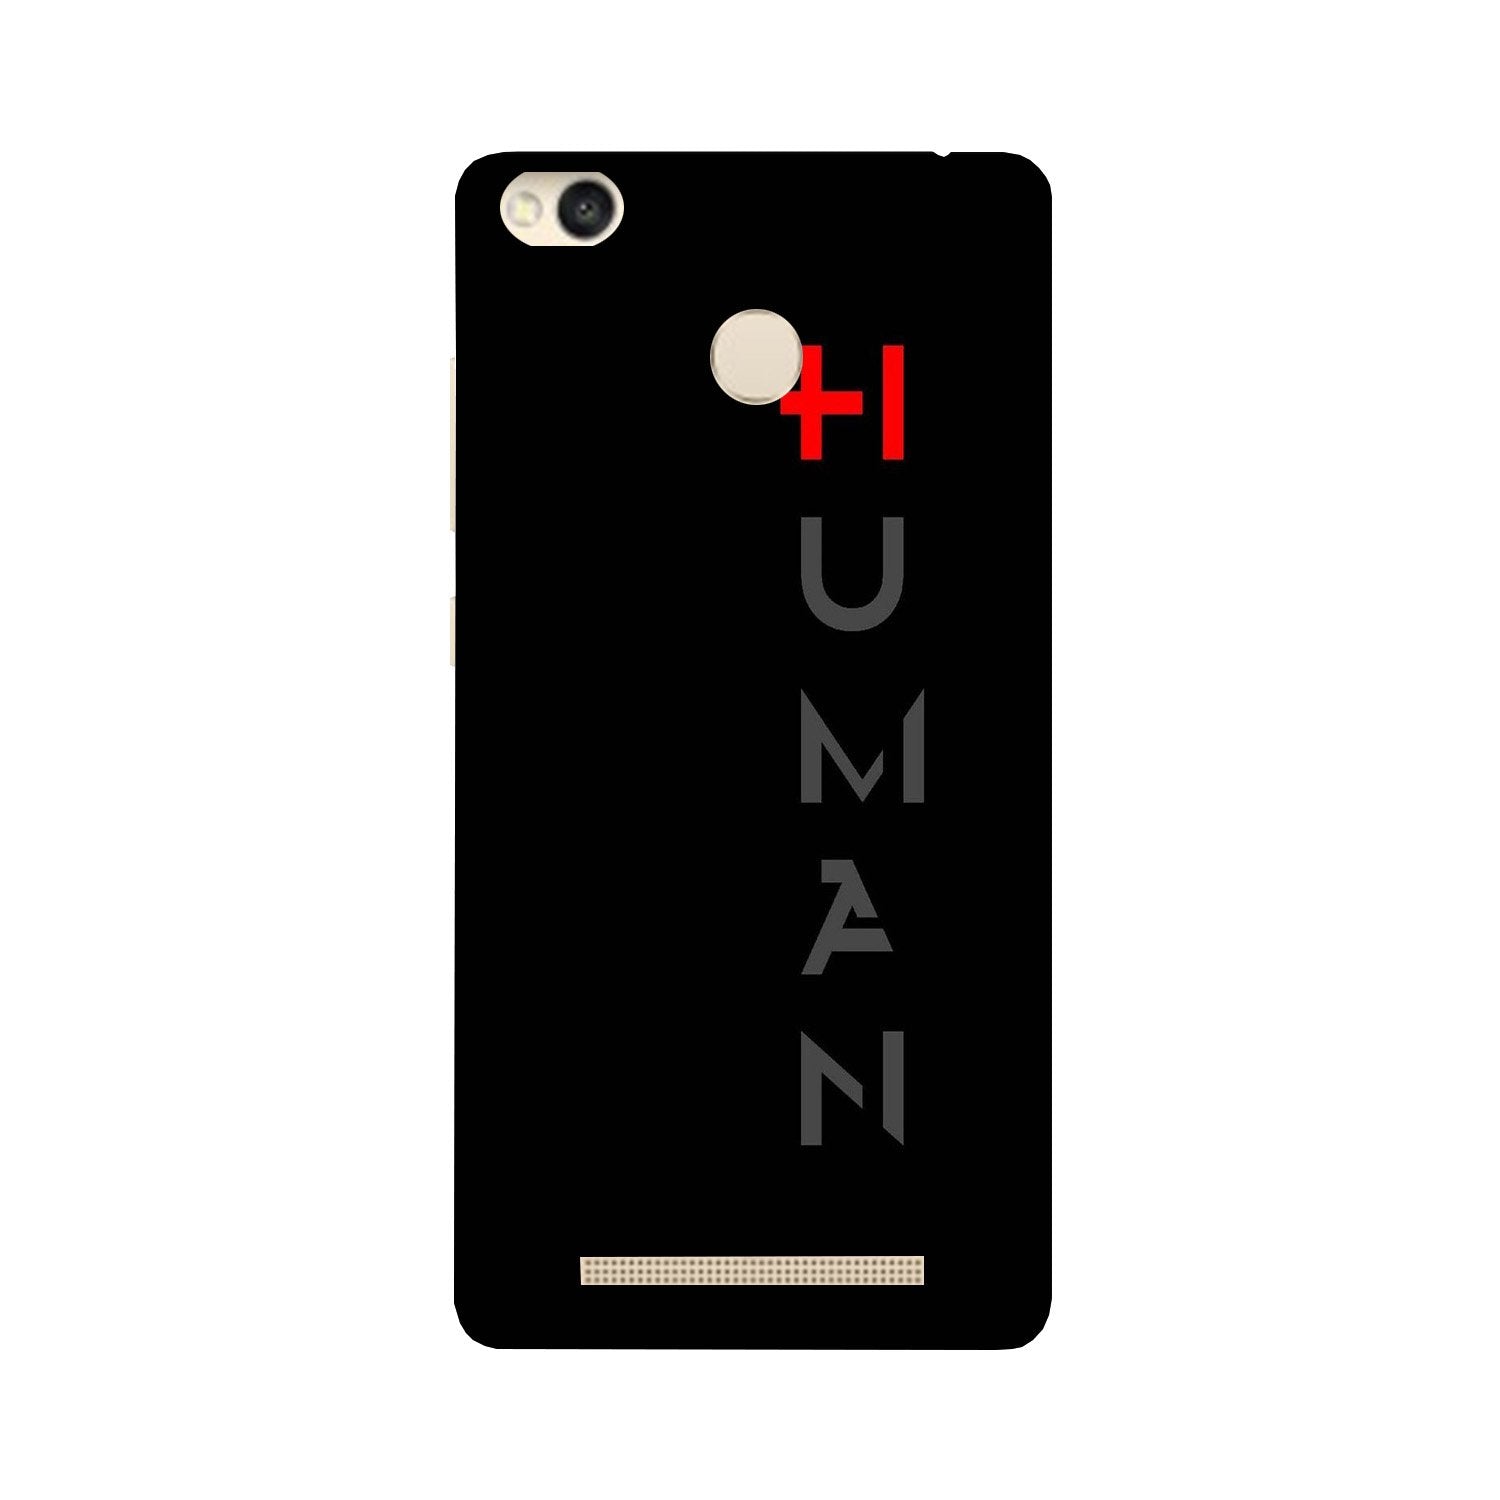 Human Case for Redmi 3S Prime(Design - 141)